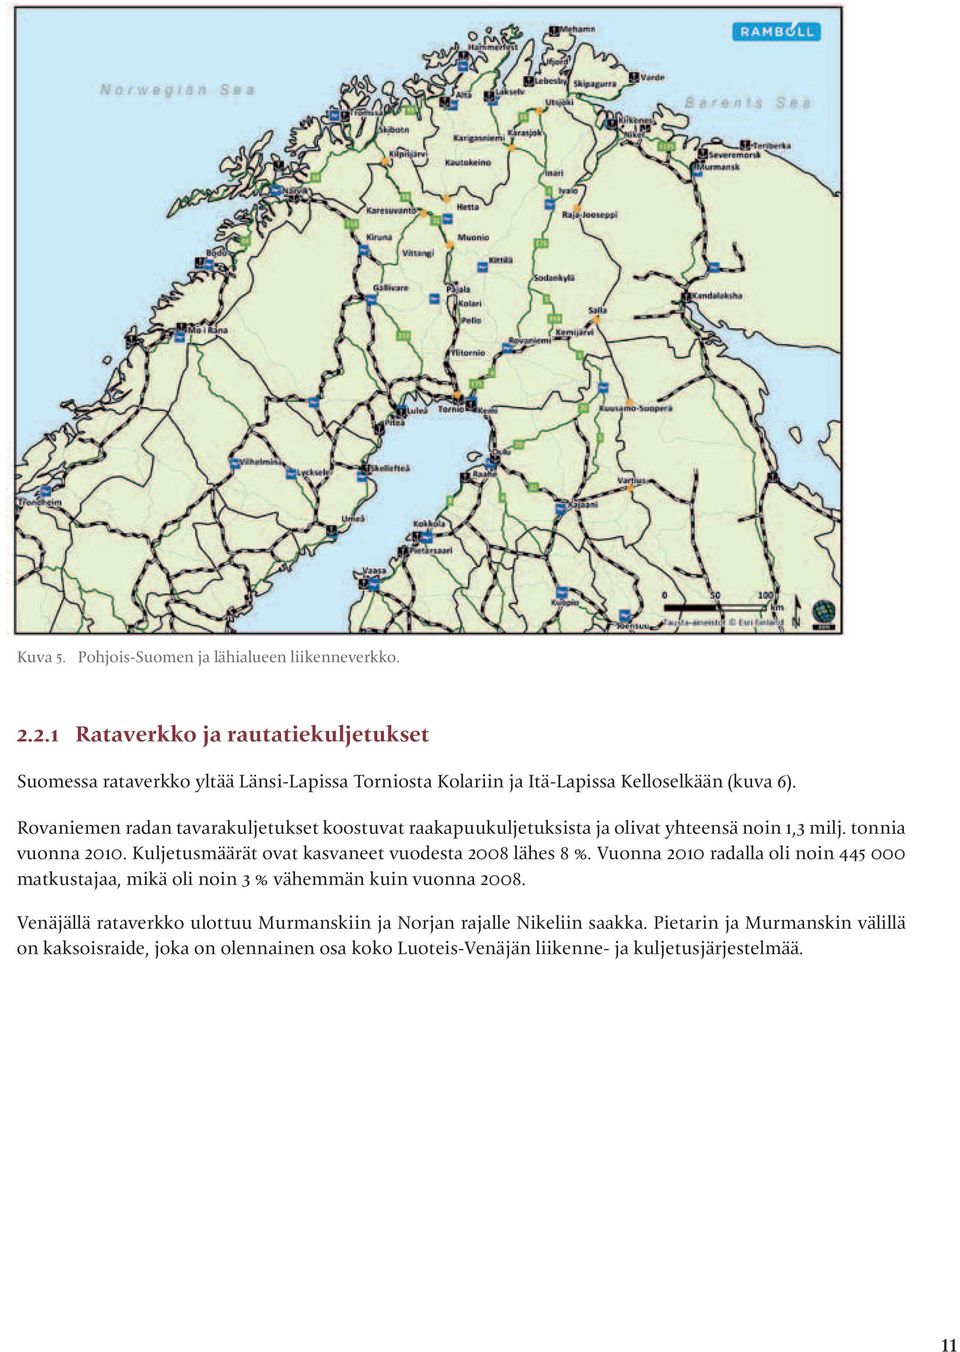 Rovaniemen radan tavarakuljetukset koostuvat raakapuukuljetuksista ja olivat yhteensä noin 1,3 milj. tonnia vuonna 2010.